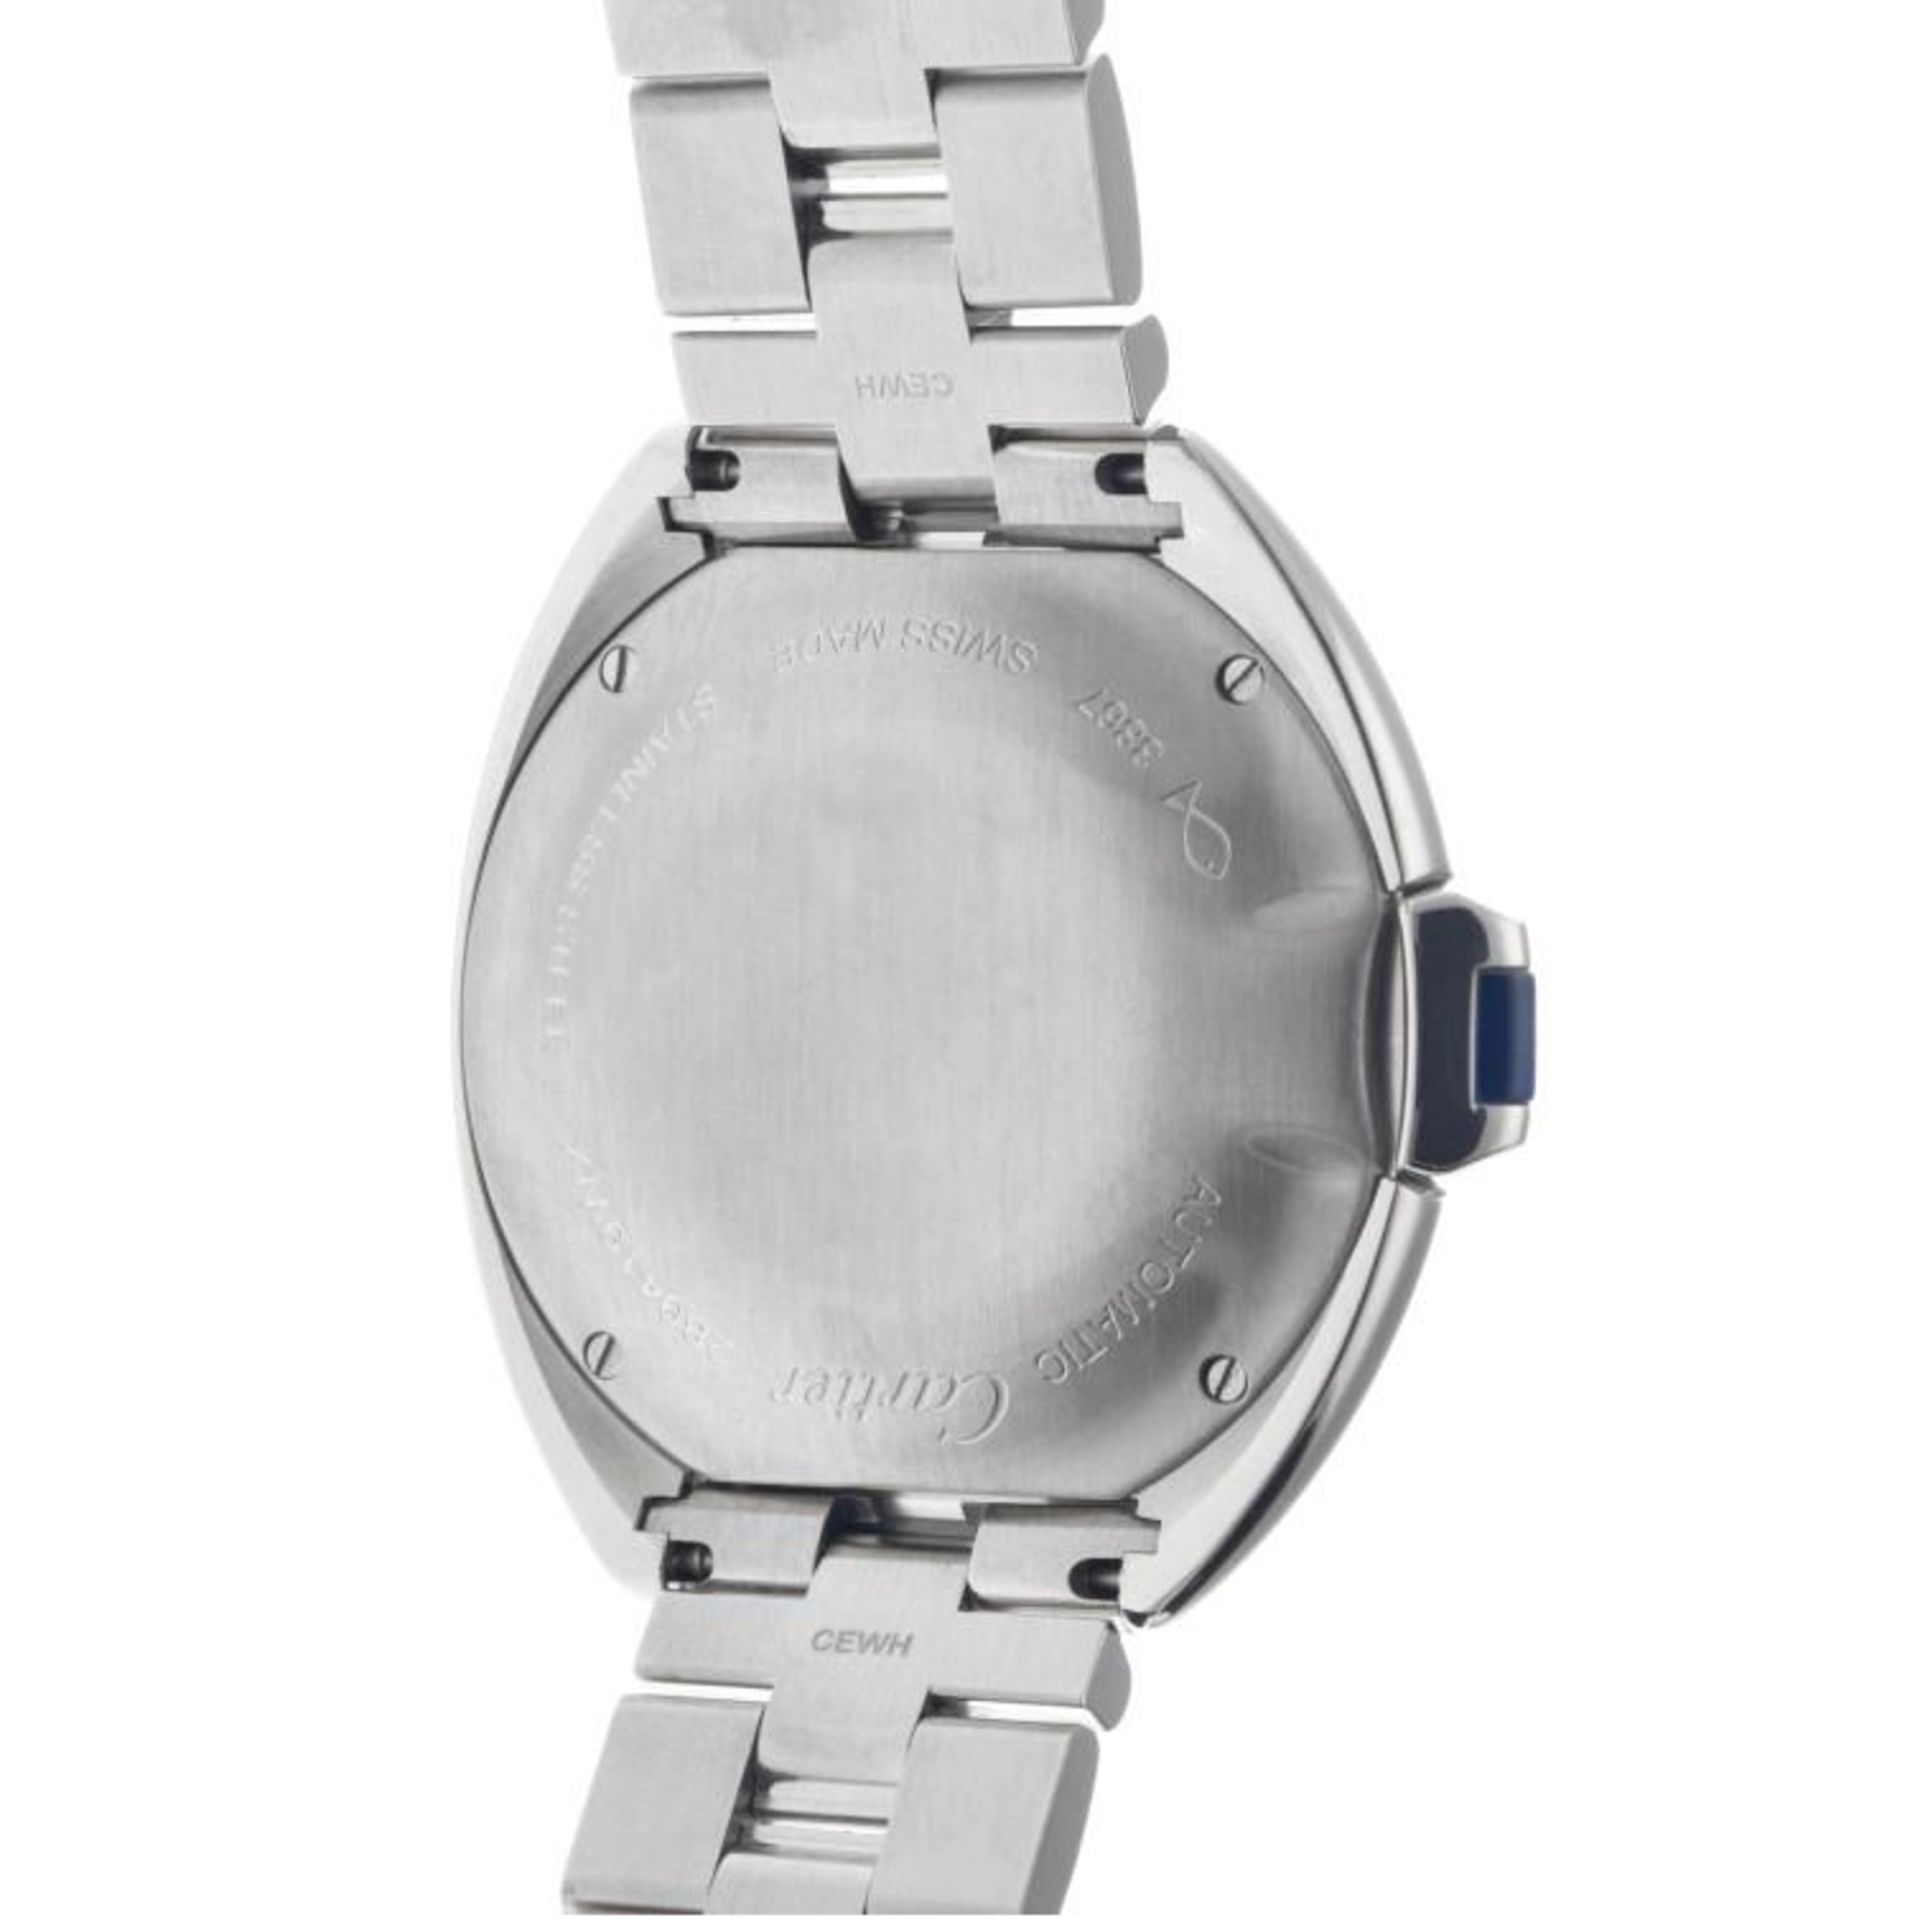 Cartier Clé WSCL0005 - Men's watch - 2020. - Image 10 of 12